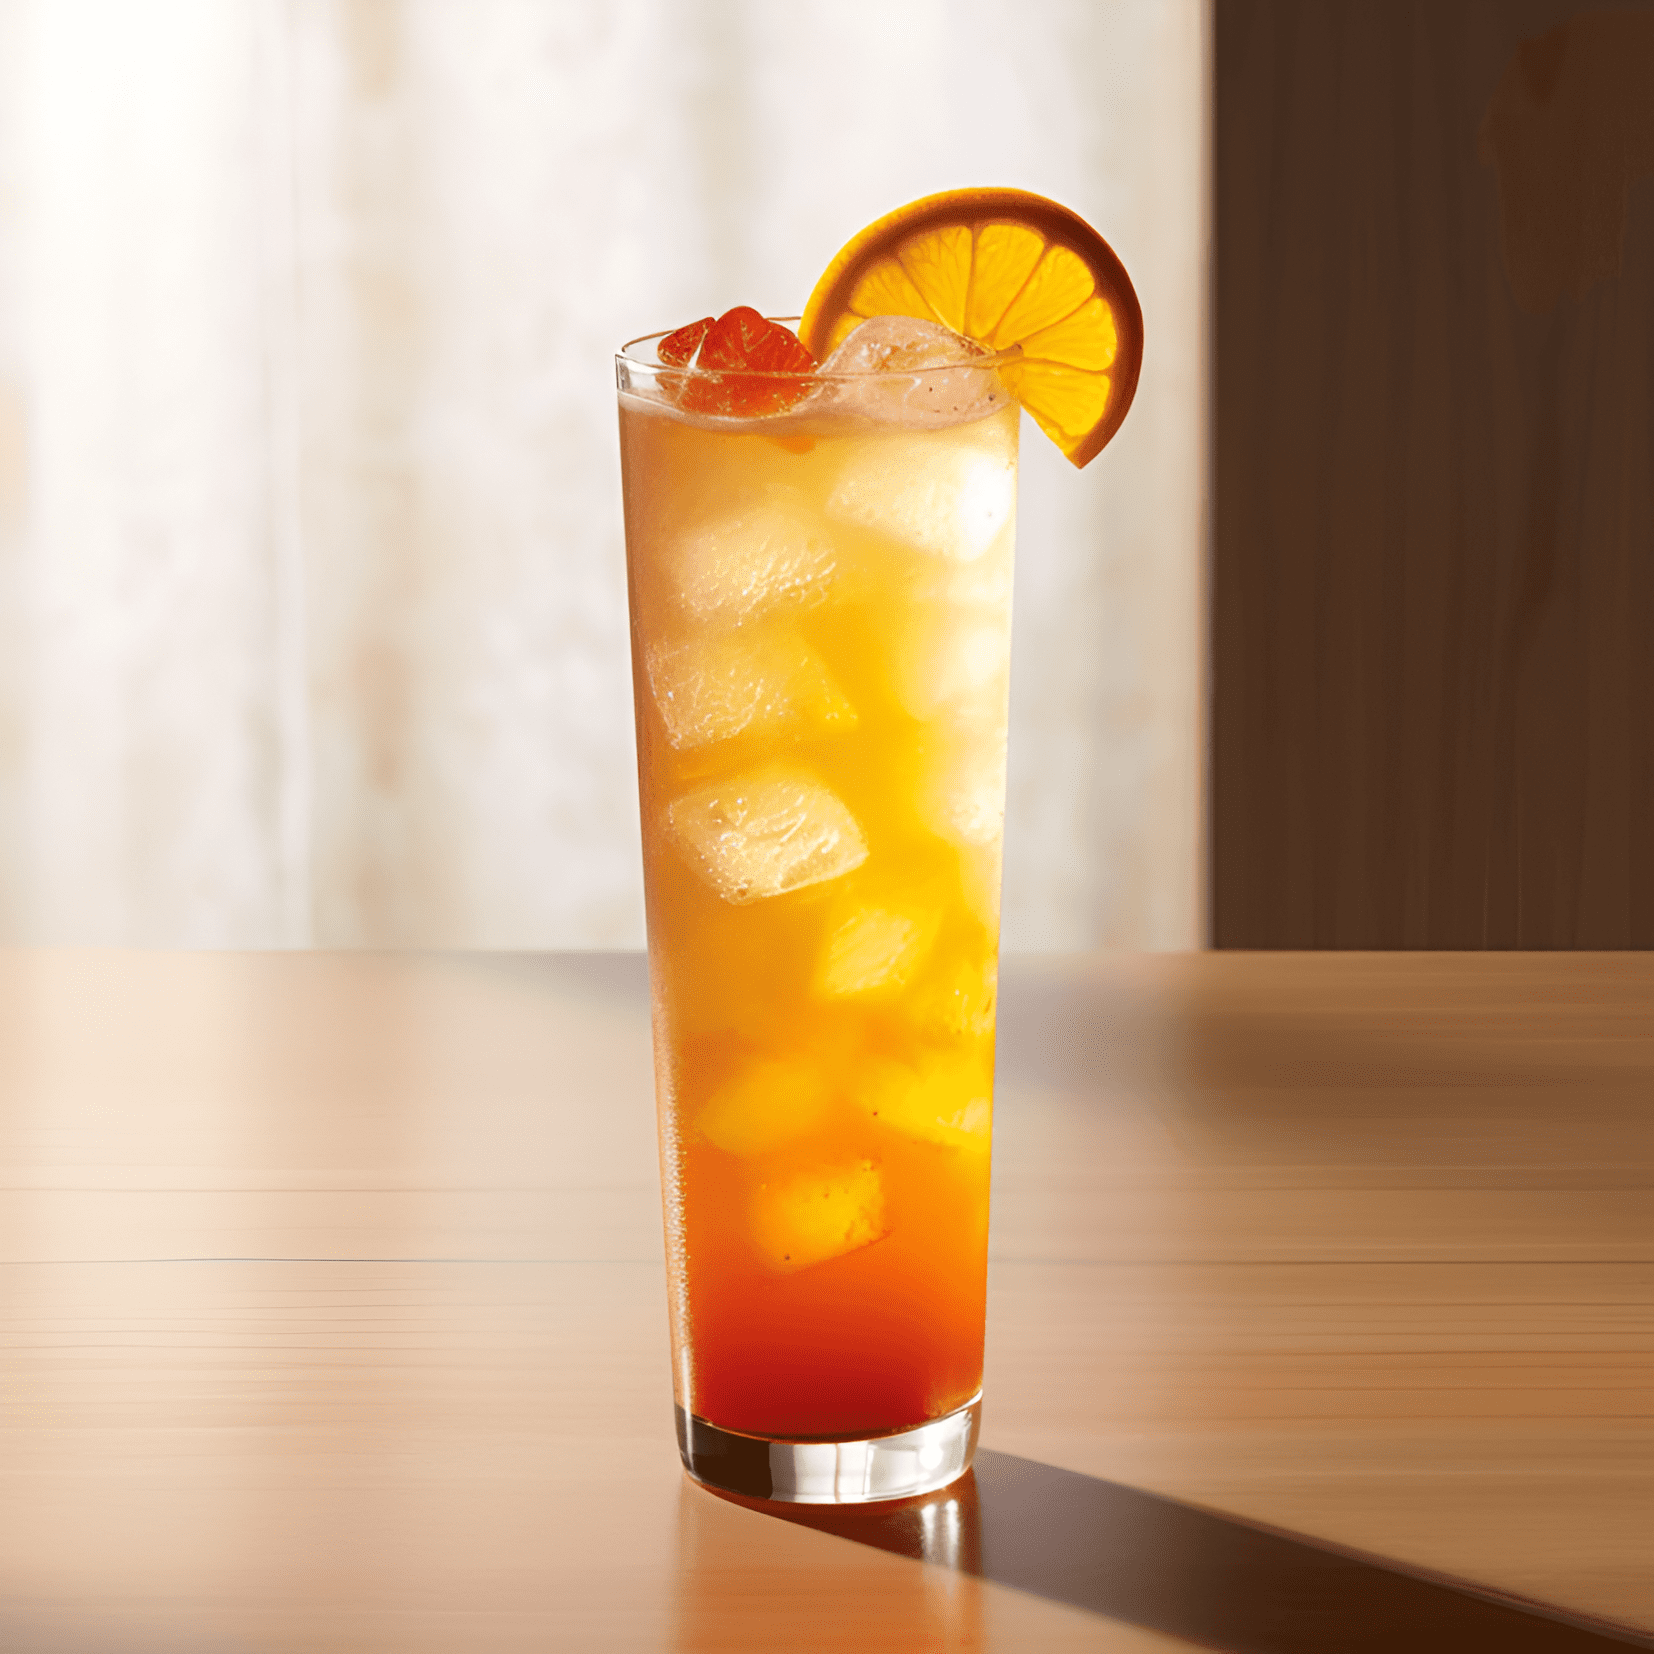 Orange Oasis Cóctel Receta - El cóctel Orange Oasis es una deliciosa mezcla de sabores dulces, ácidos y afrutados. Los jugos de naranja y piña proporcionan un sabor cítrico refrescante, mientras que el ron de coco agrega un toque de dulzura tropical. La granadina le da a la bebida un toque de acidez, lo que la convierte en un cóctel equilibrado y agradable.